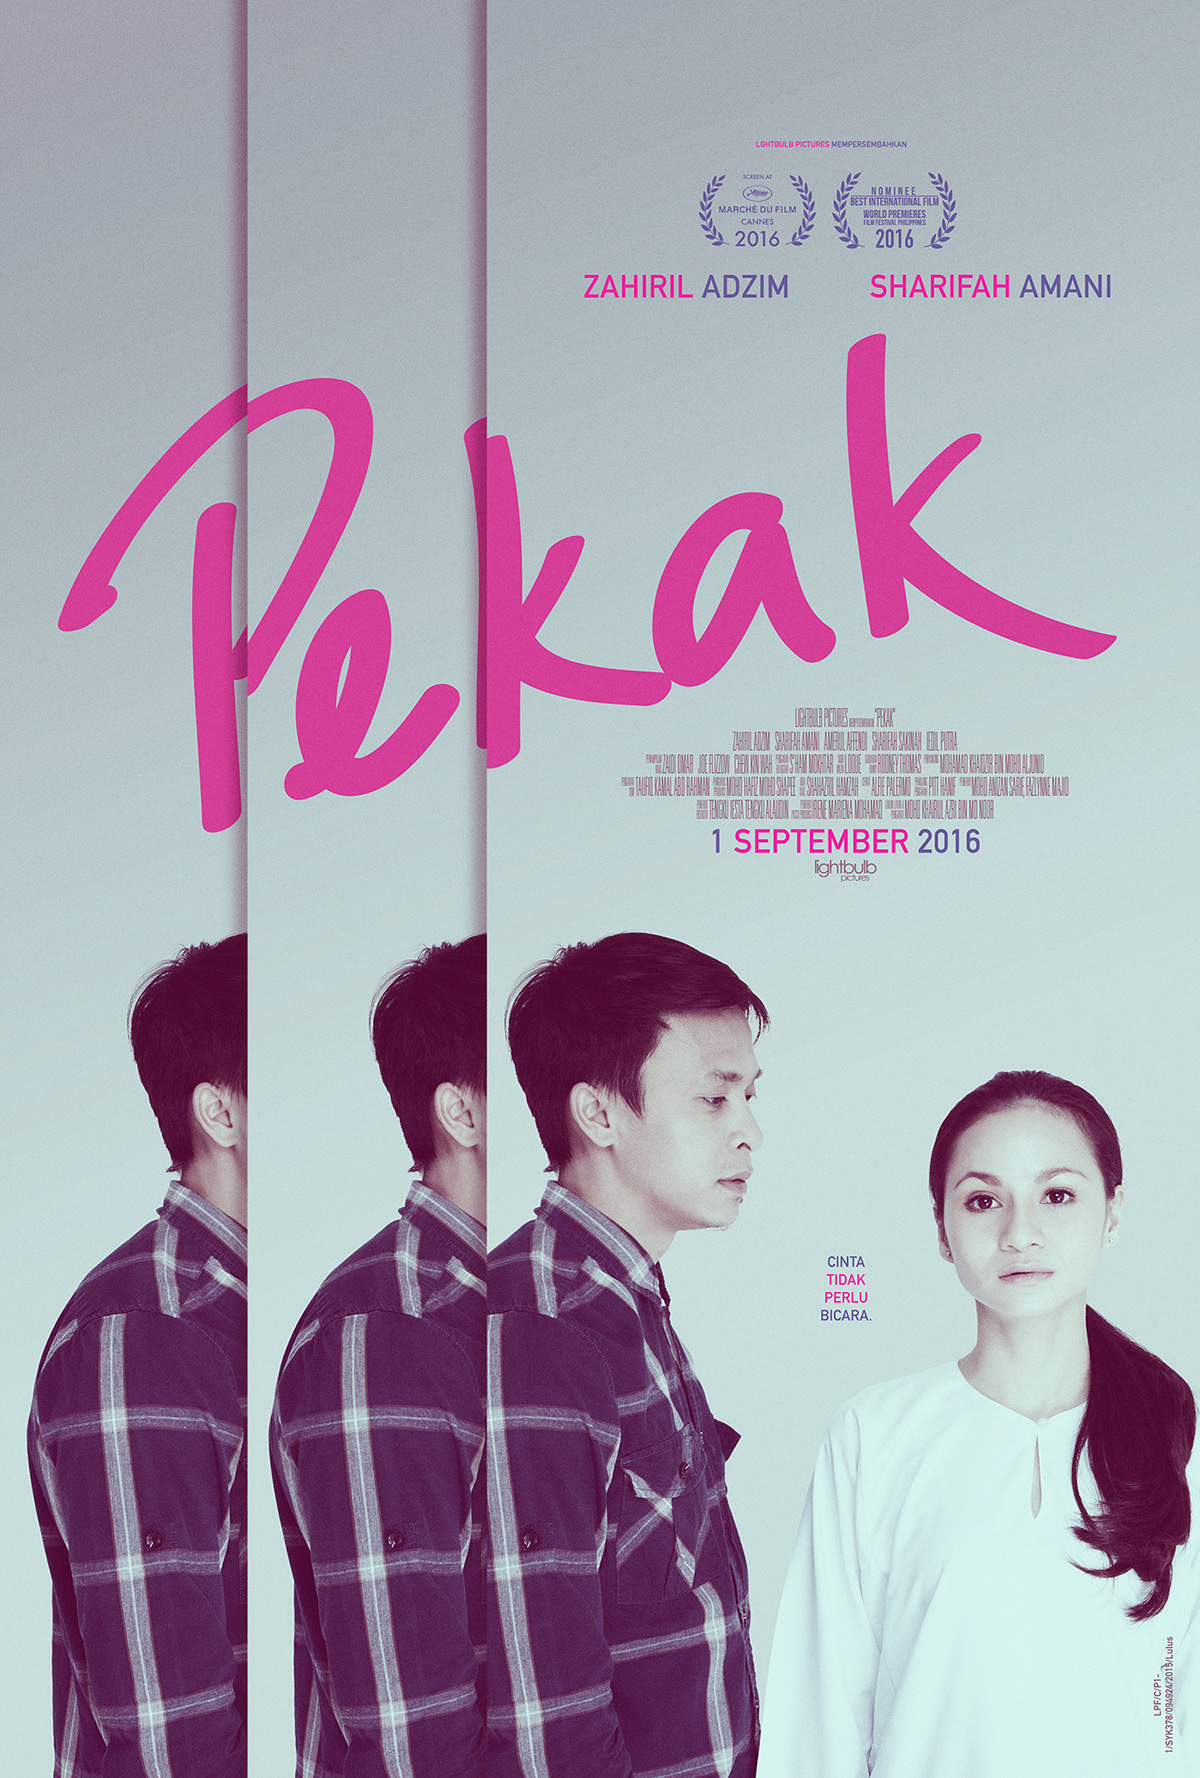 Pekak malaysia film poster movie poster one sheet key art keyart